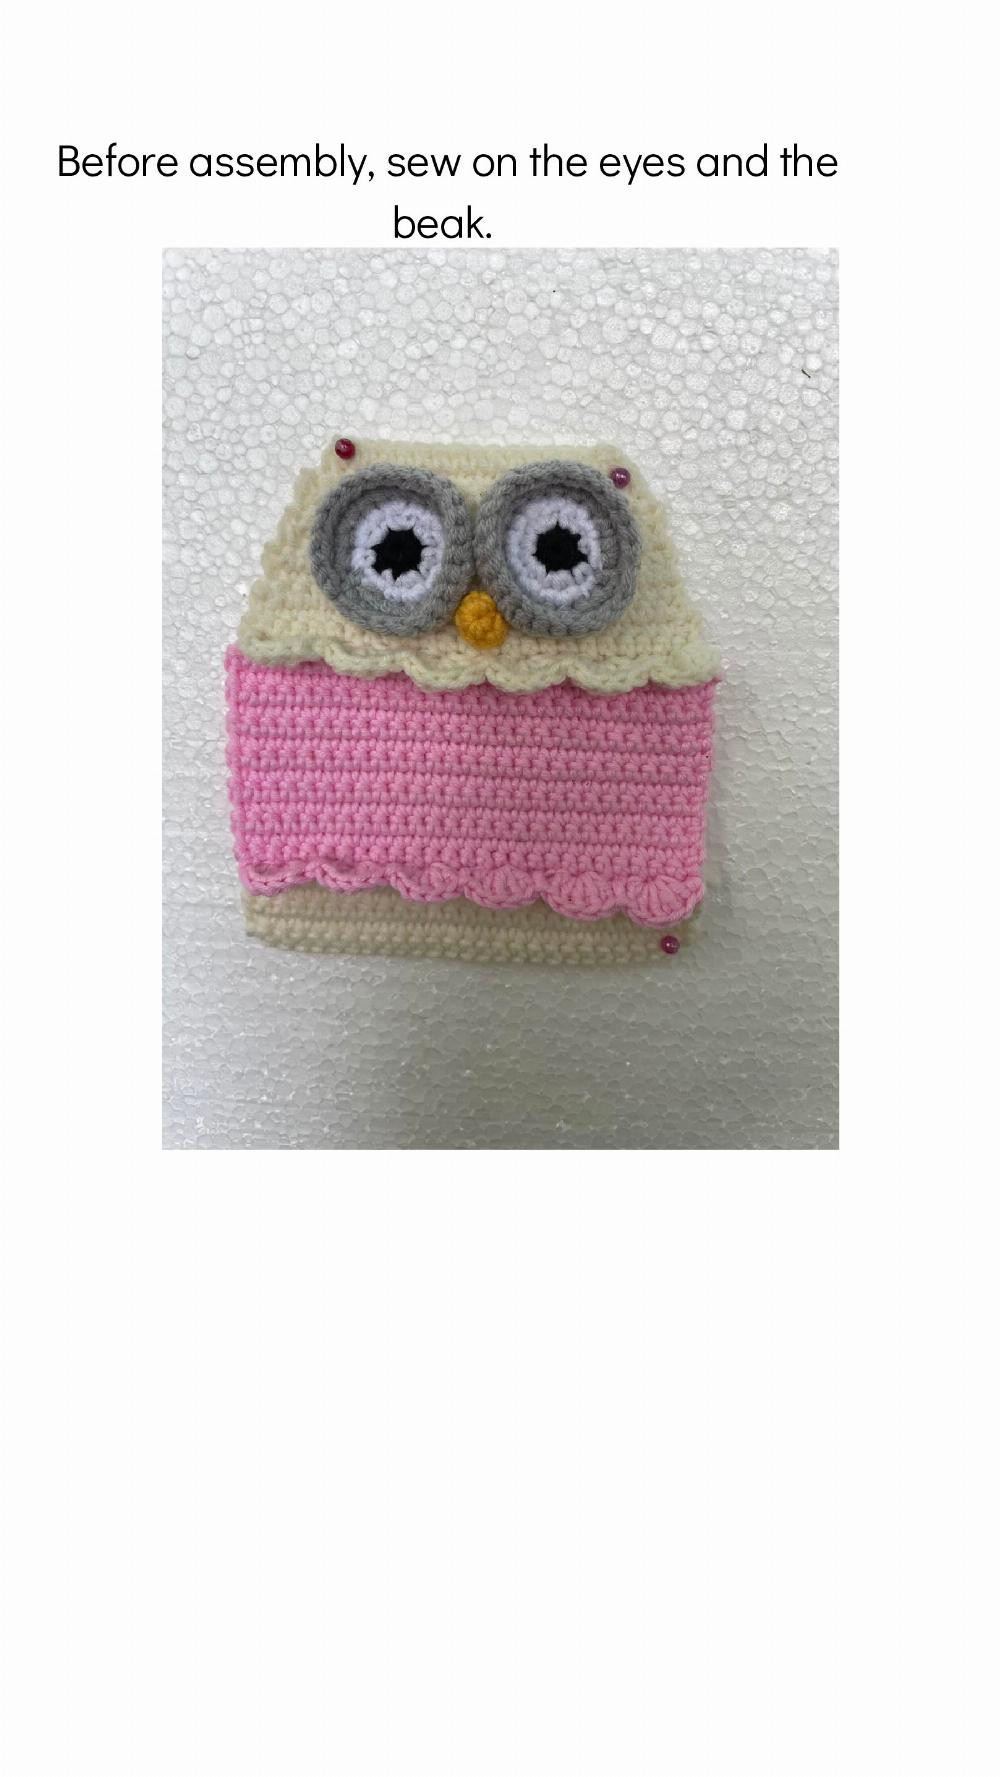 Crochet pattern Fidget sensory stretchable toy Owl